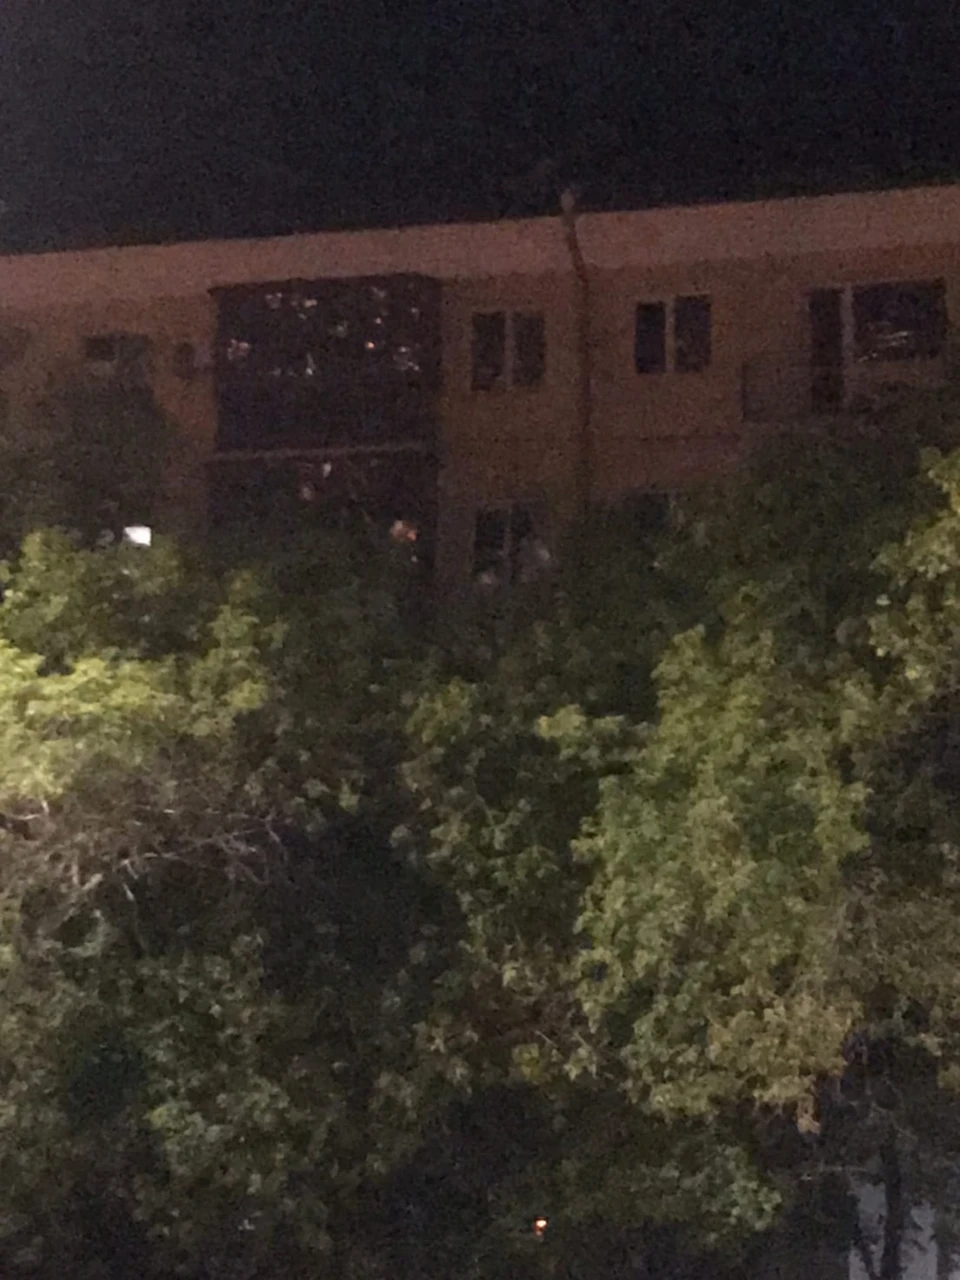 Автор поста предполагает, что именно из какой-то из этих квартир на Иртышской набережной 17 раздавались выстрелы.